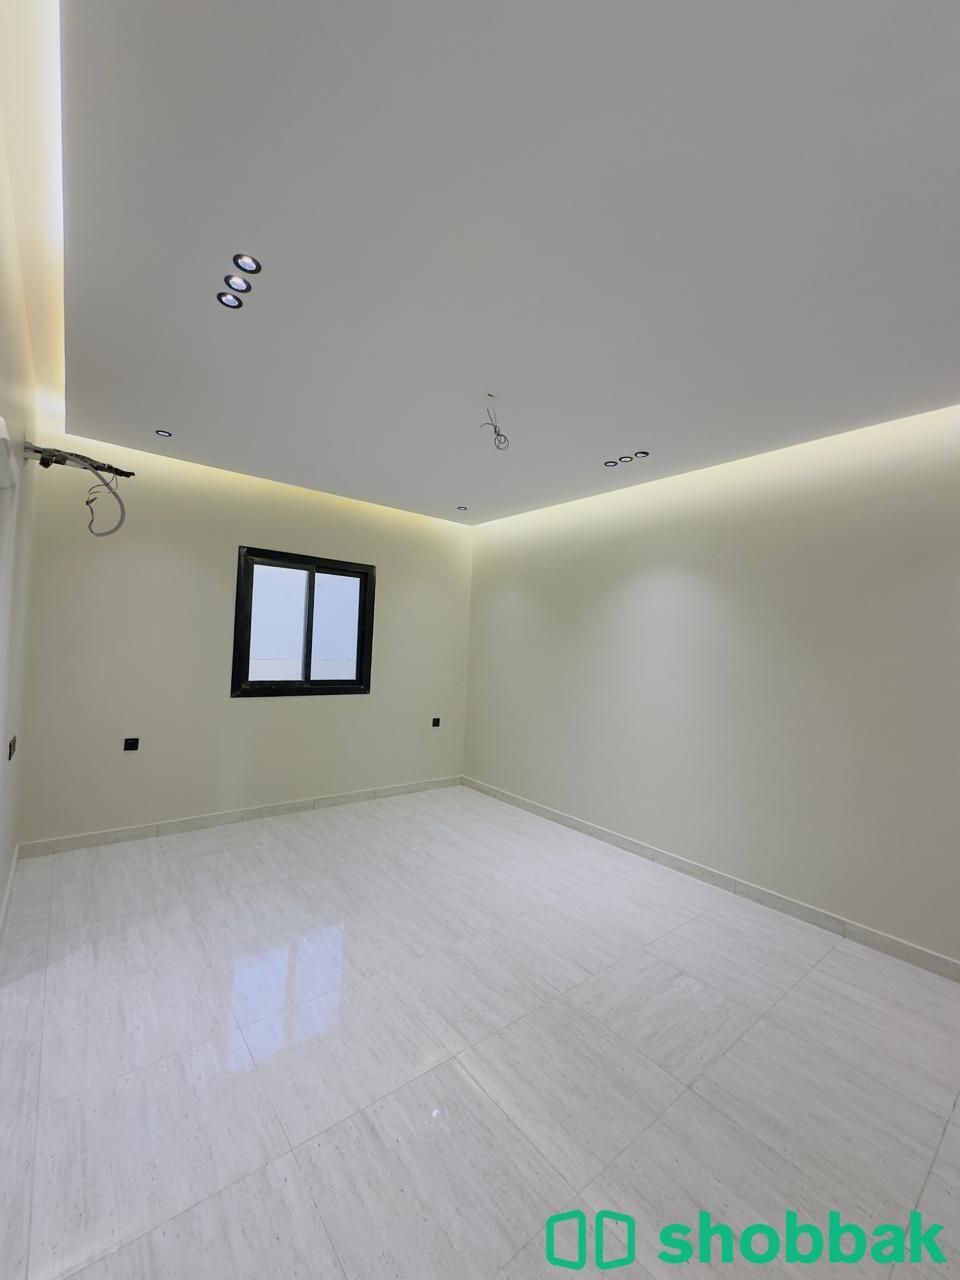 شقة 4 غرف بجدة حي الفيصلية للبيع من المالك مباشرة  Shobbak Saudi Arabia